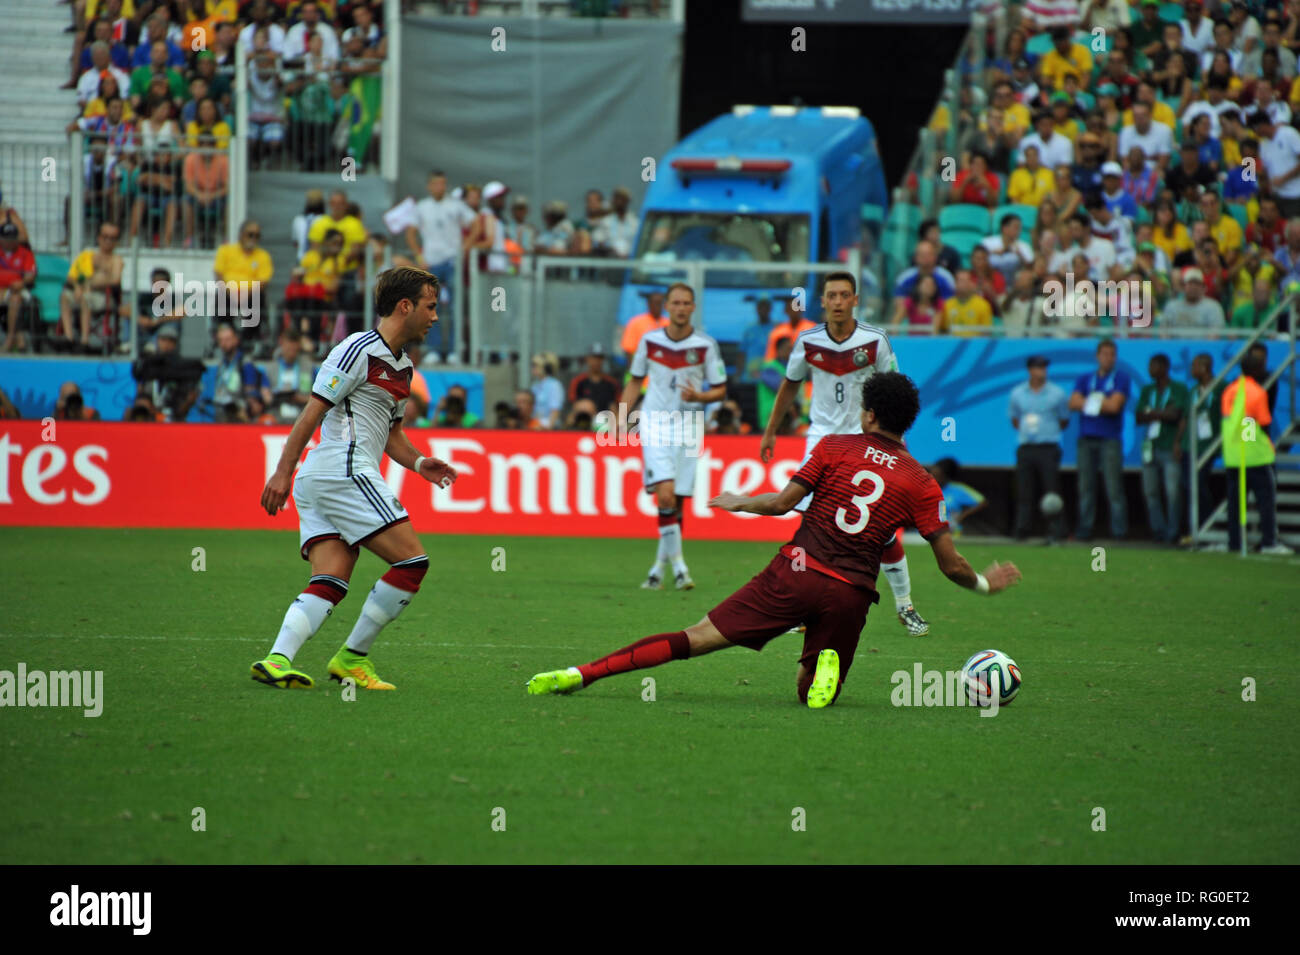 Coupe du Monde FIFA 2014, l'Allemagne contre le Portugal, Salvador da Bahia, Brésil Banque D'Images